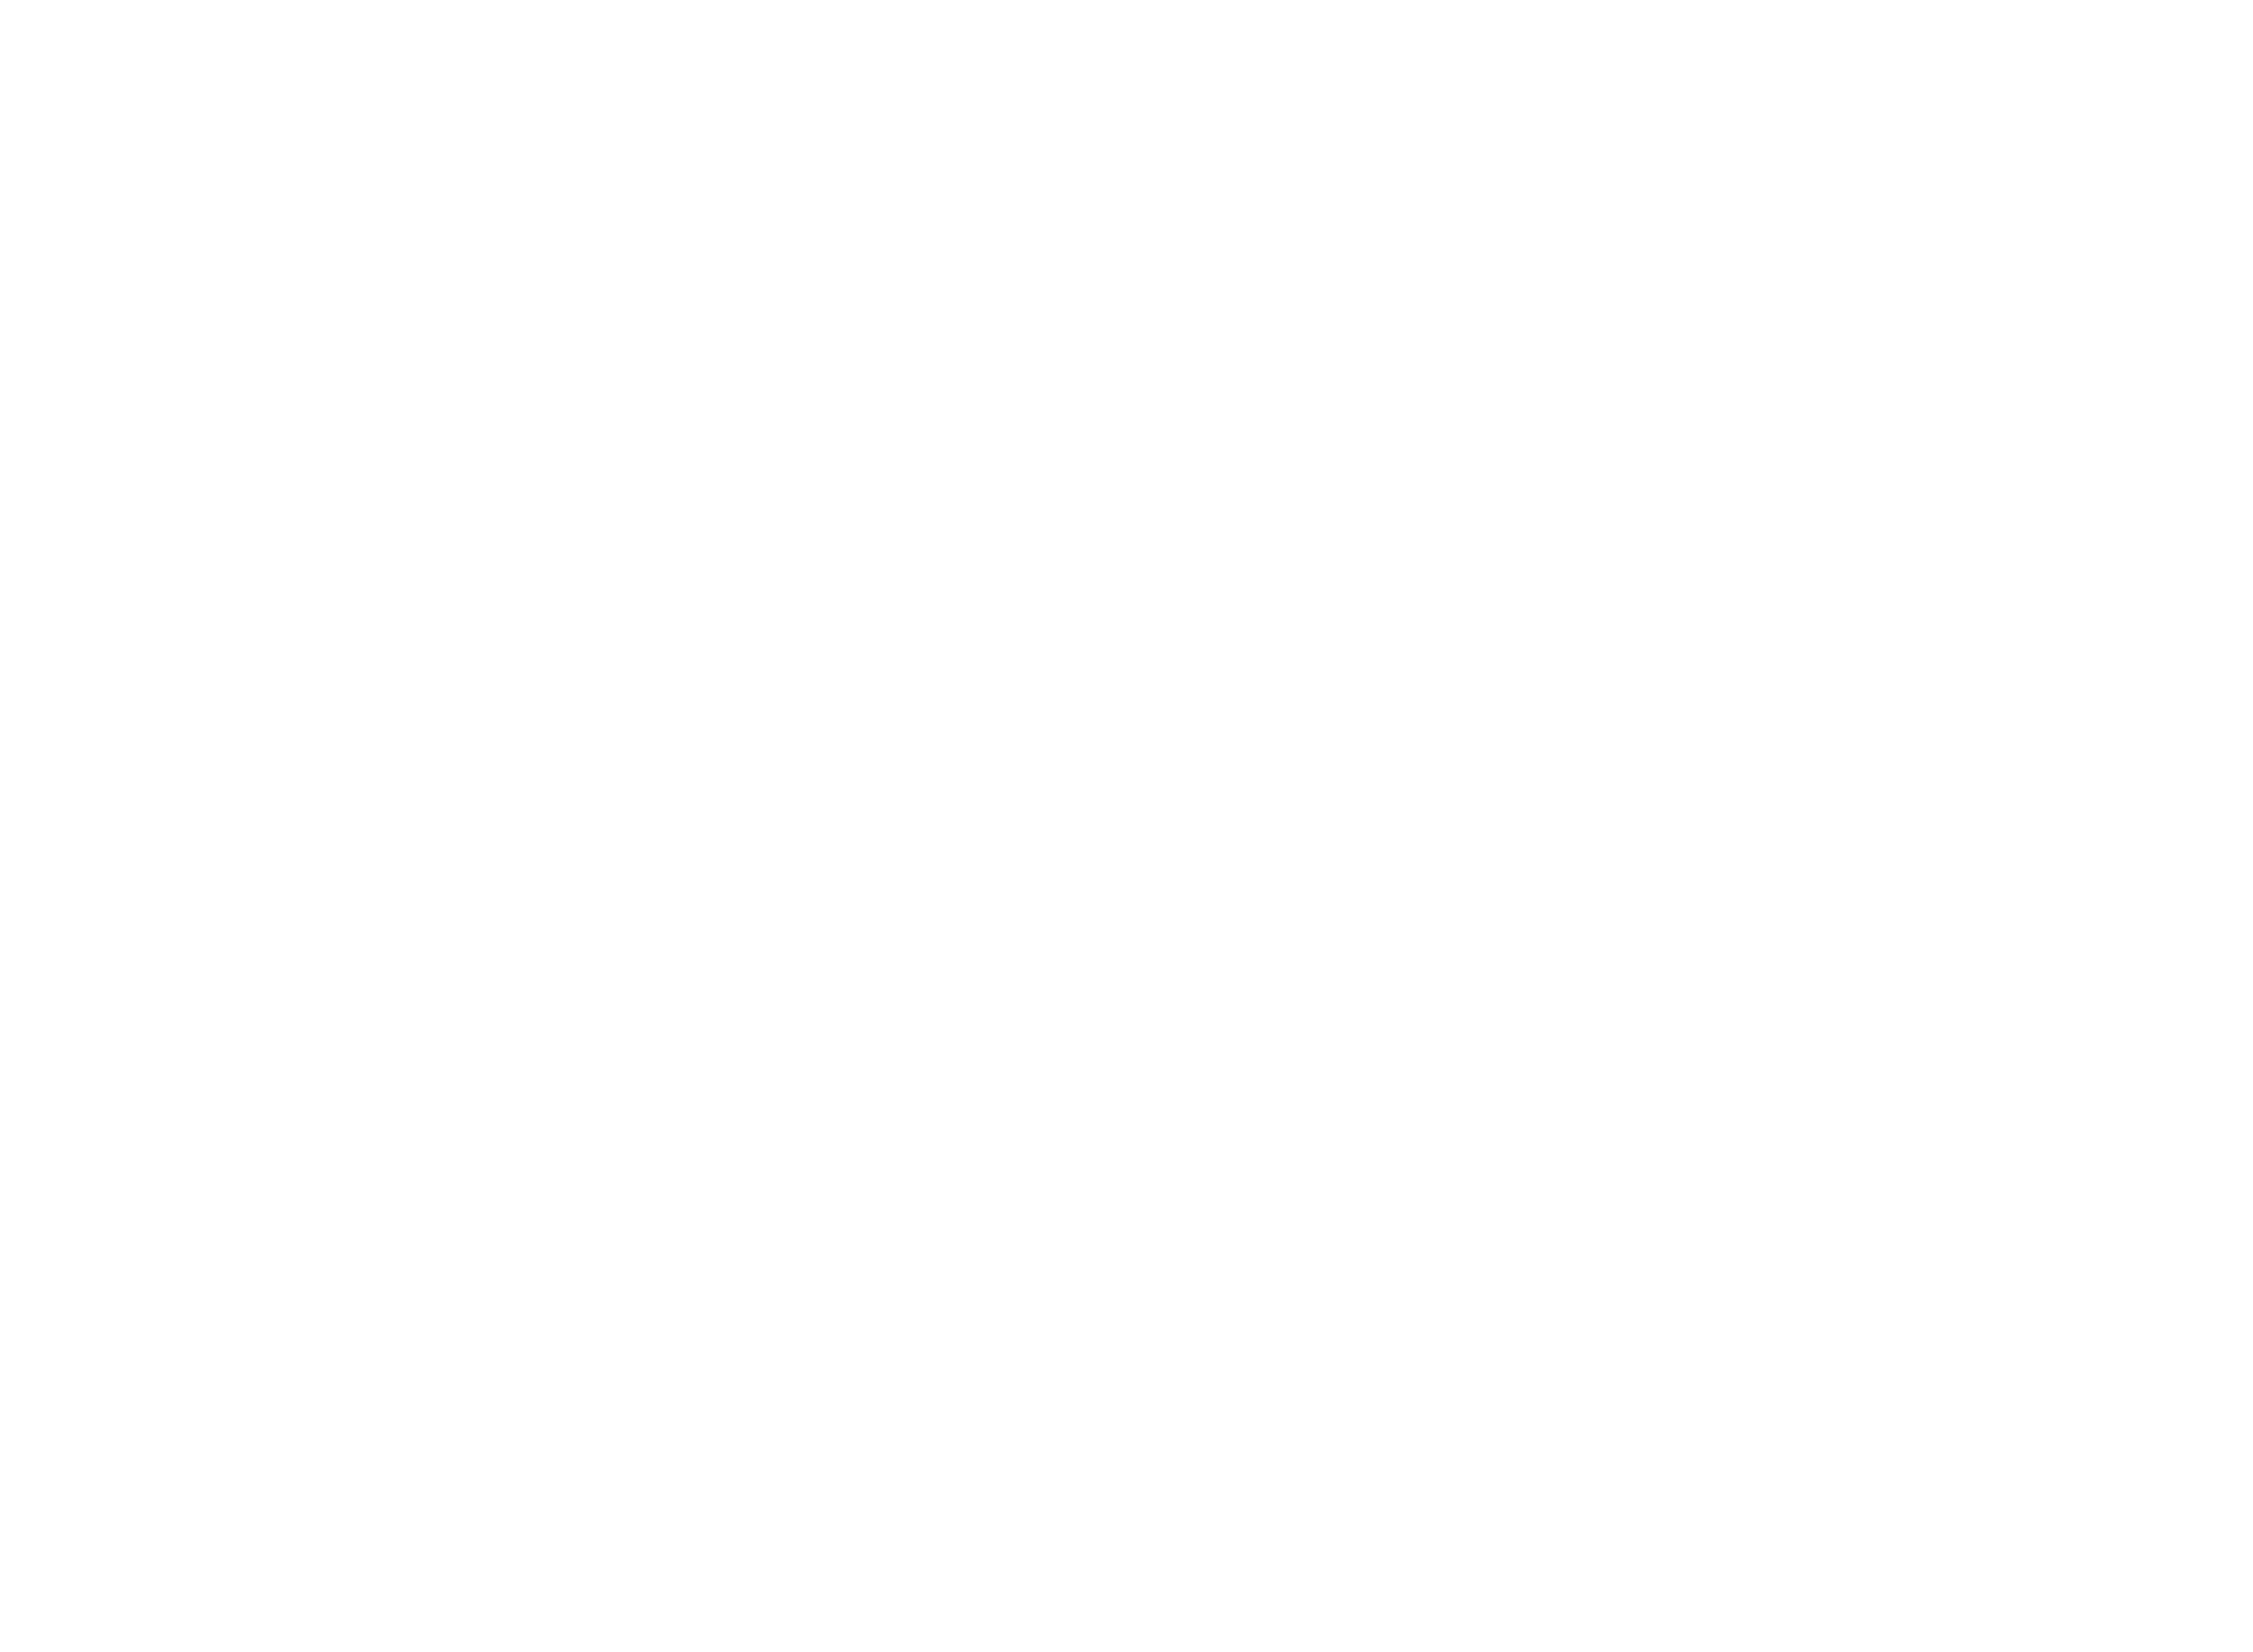 2A DosAlquemistas